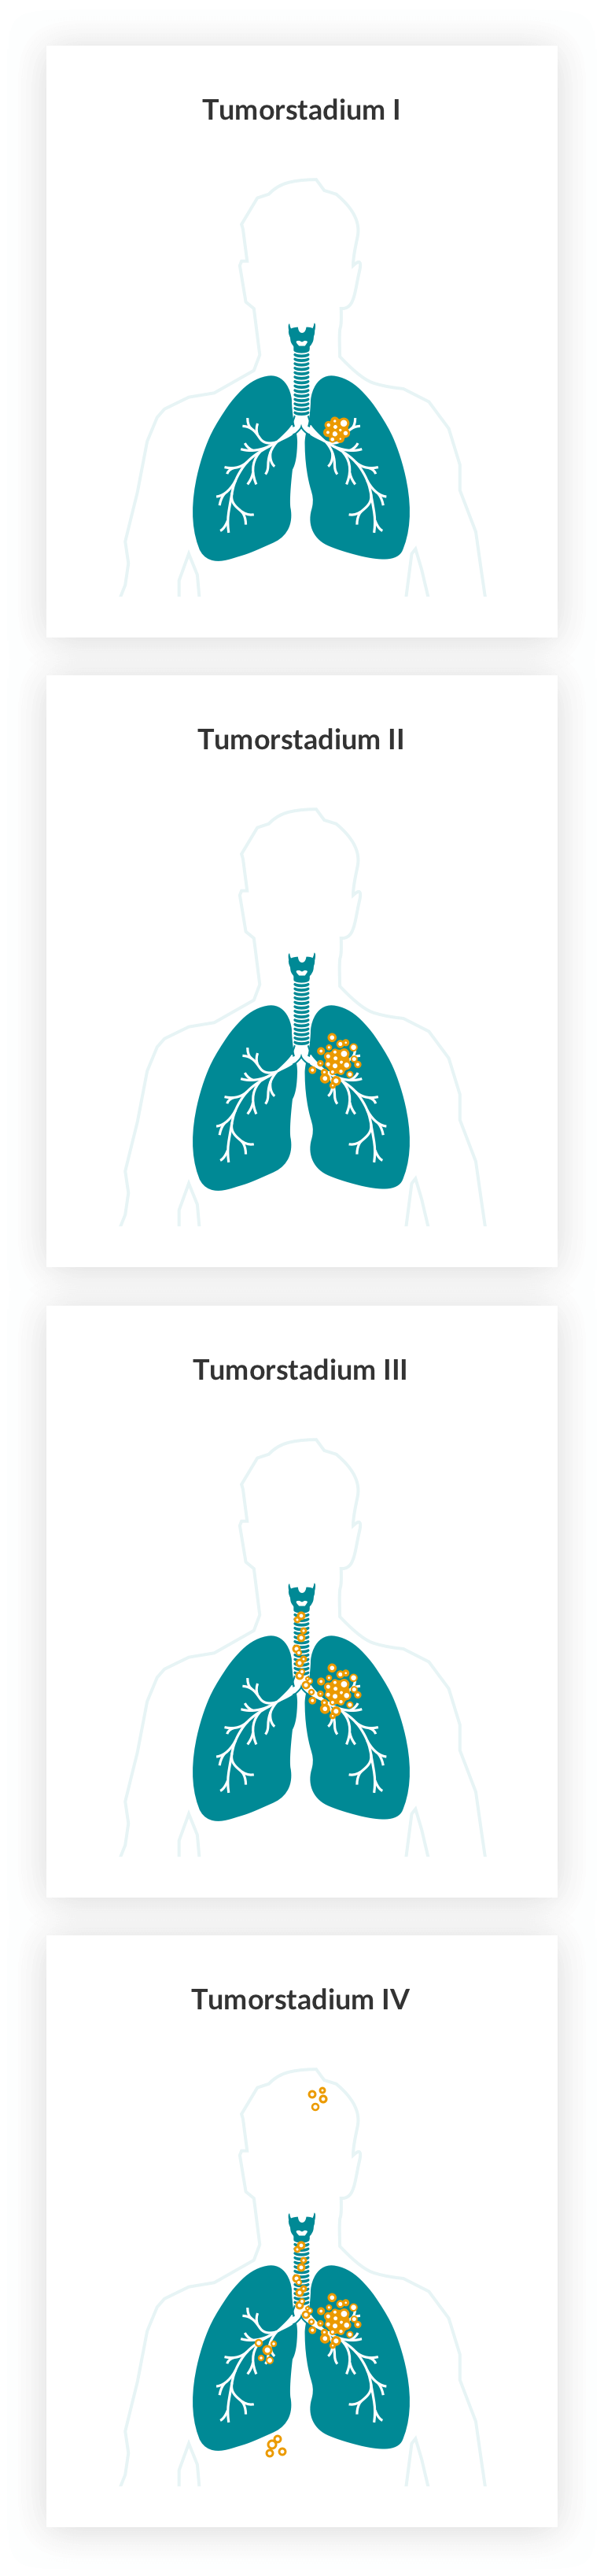 Lungenkrebs: Tumorstadien I-IV